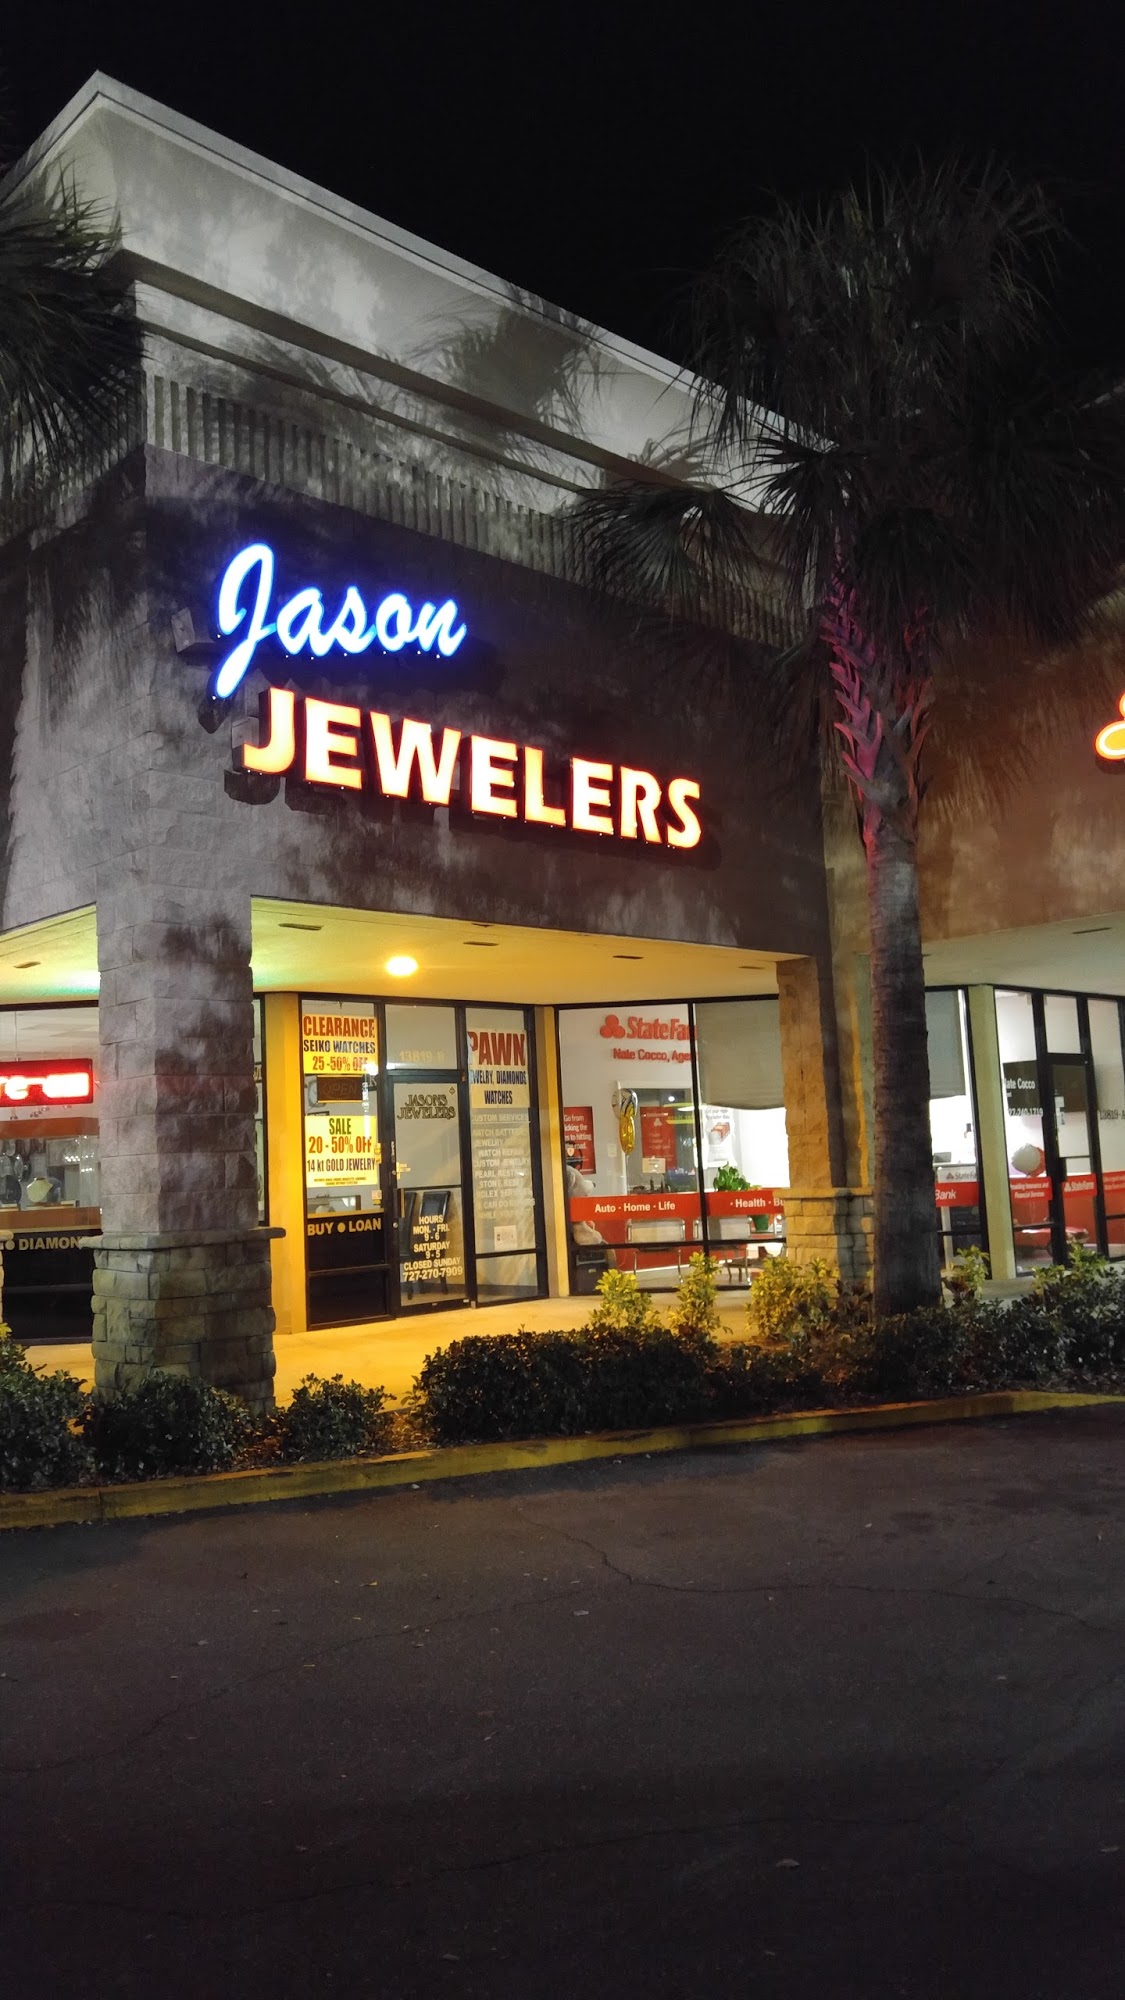 Jason Jewelers